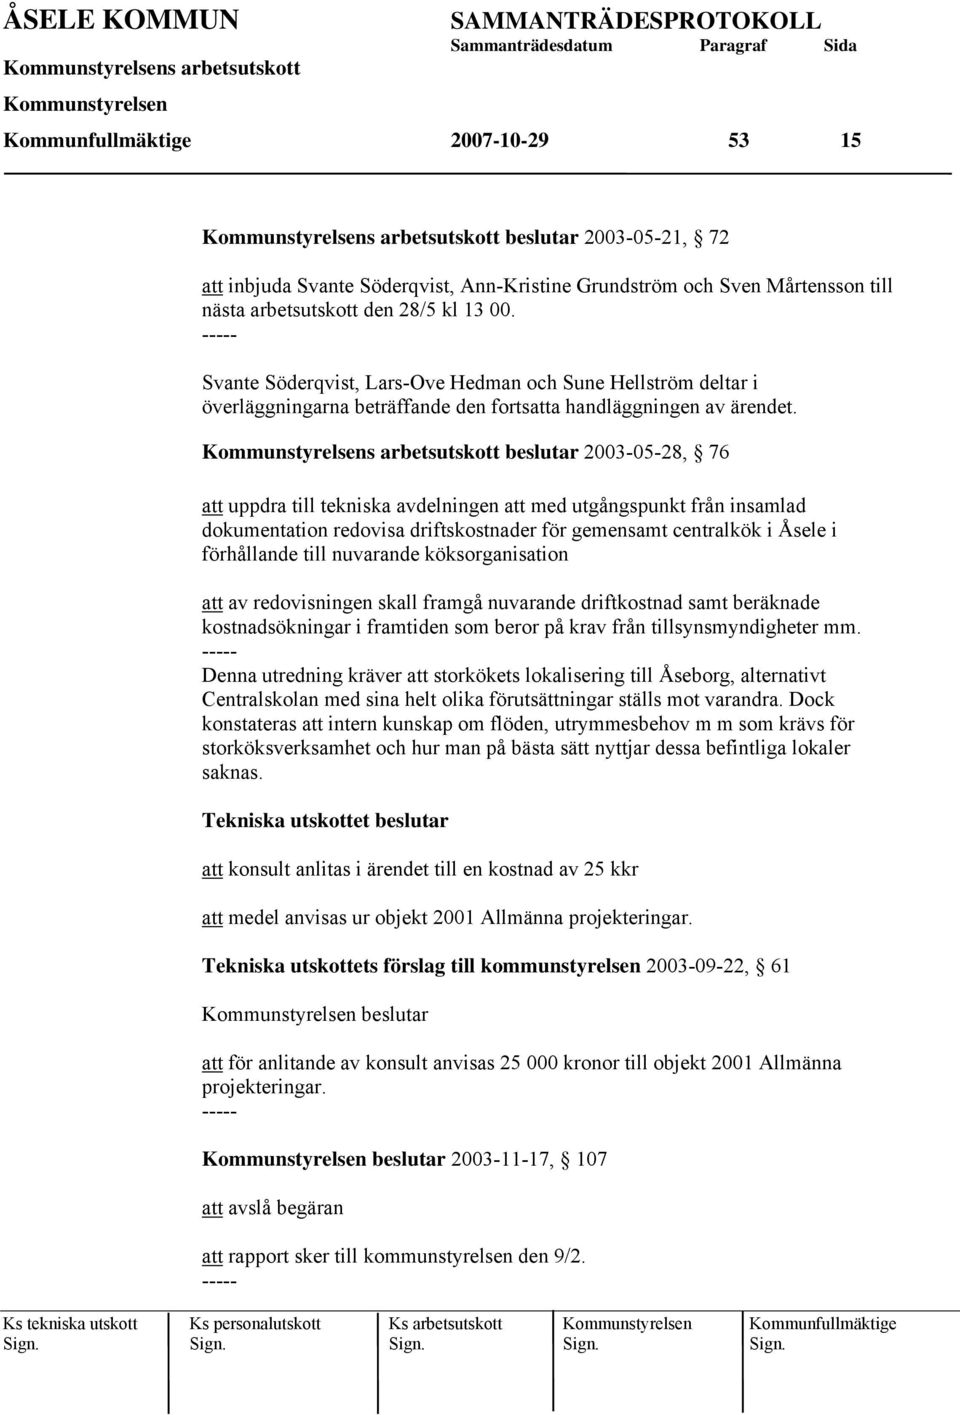 beslutar 2003-05-28, 76 att uppdra till tekniska avdelningen att med utgångspunkt från insamlad dokumentation redovisa driftskostnader för gemensamt centralkök i Åsele i förhållande till nuvarande